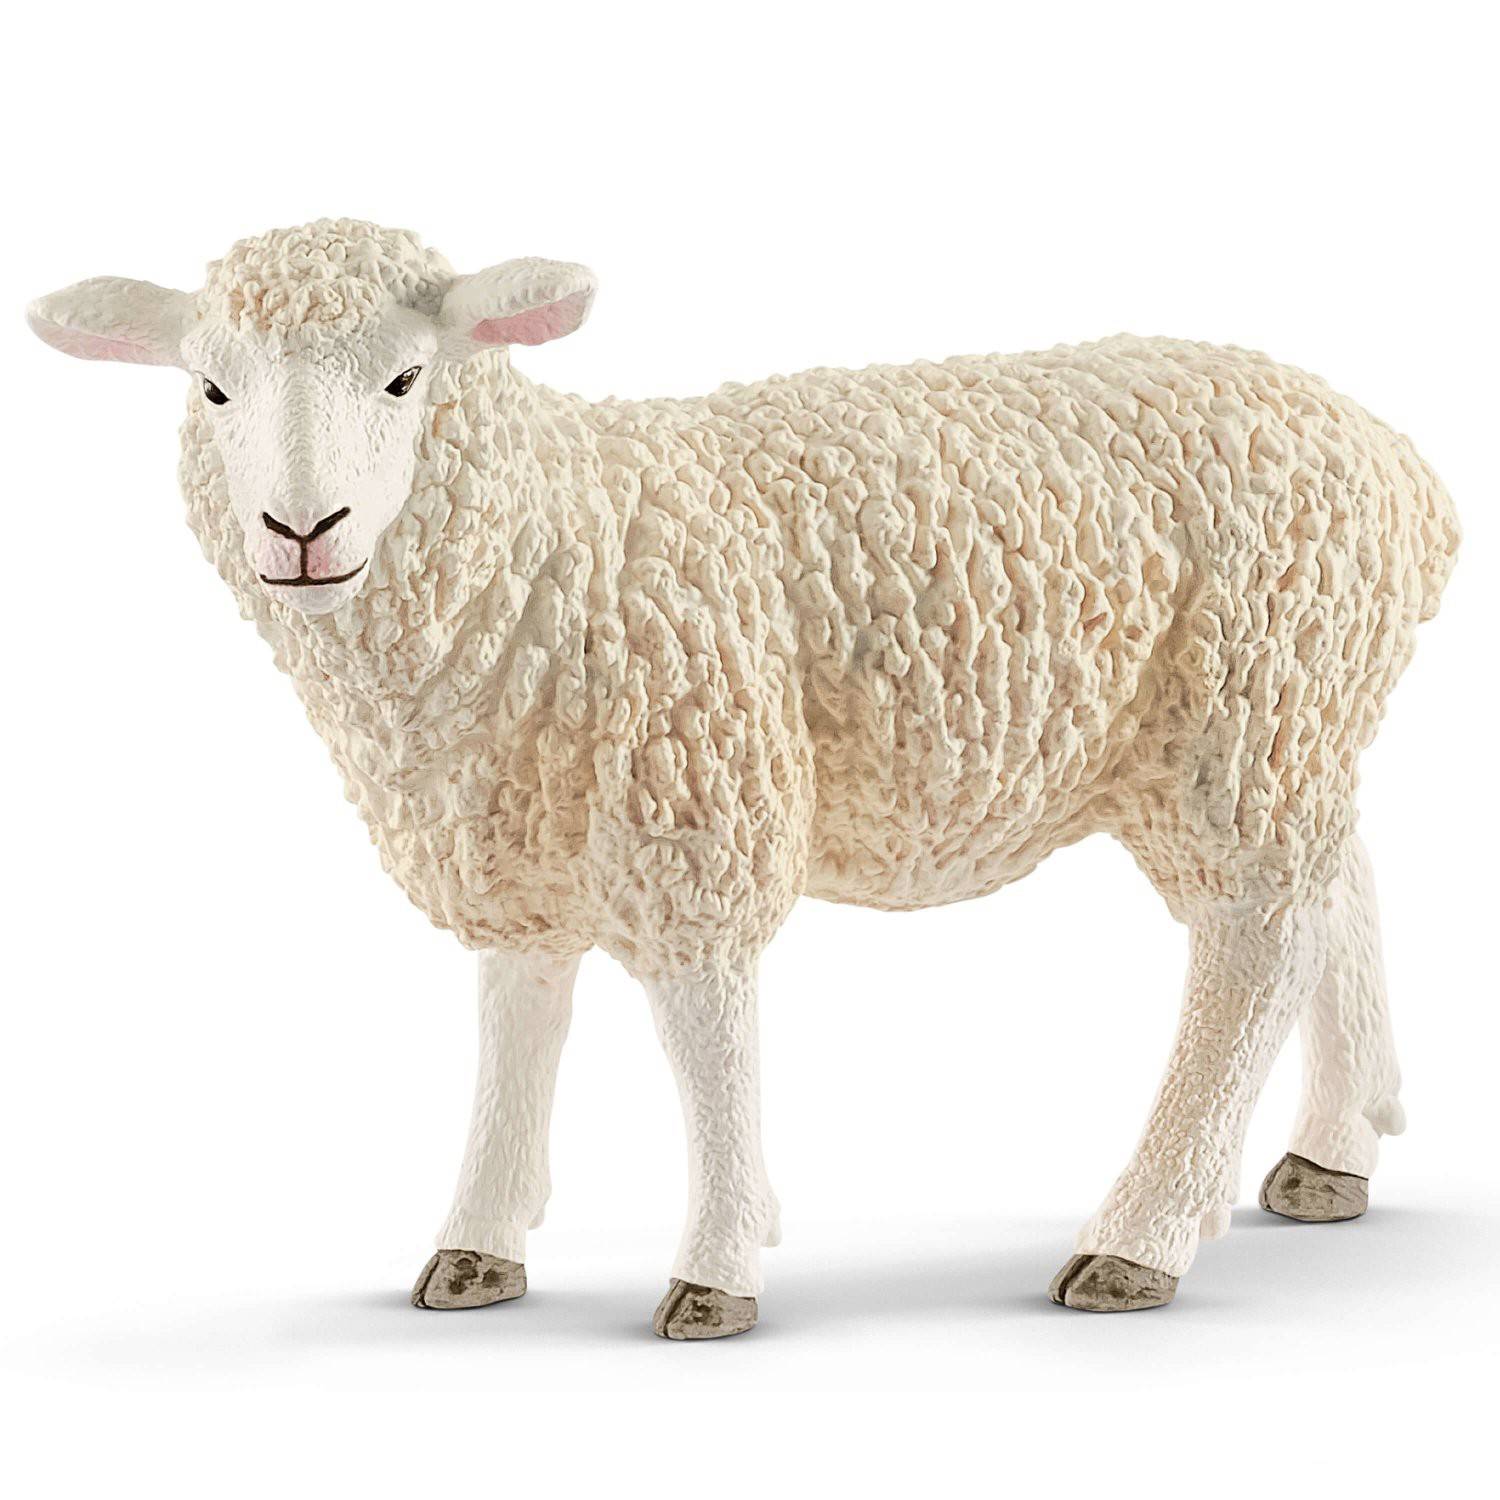 Schleich 13882 figurka Owcy